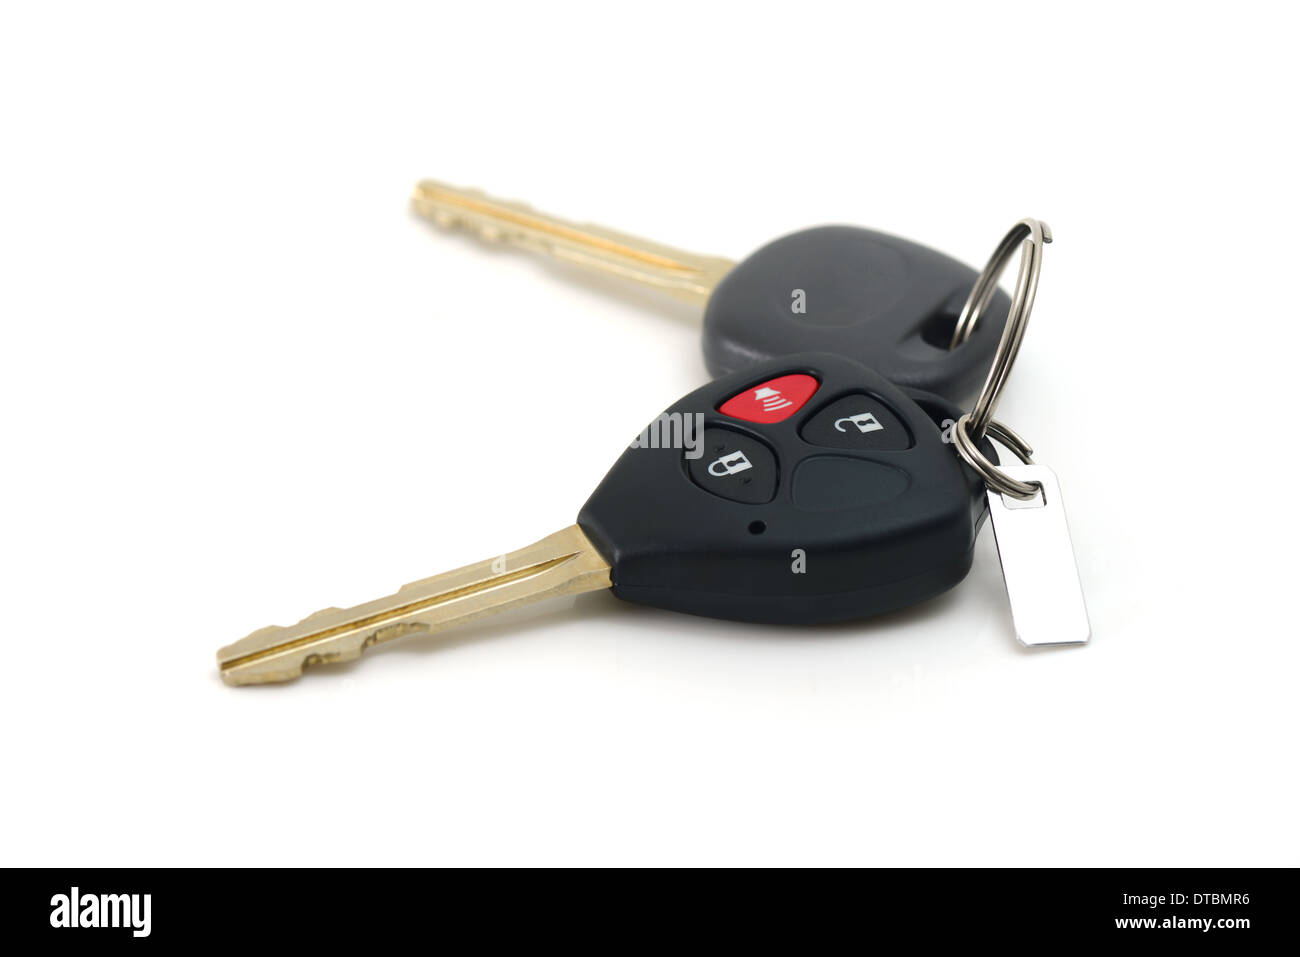 Set Of Keys Stock Illustration - Download Image Now - Car Key, Key